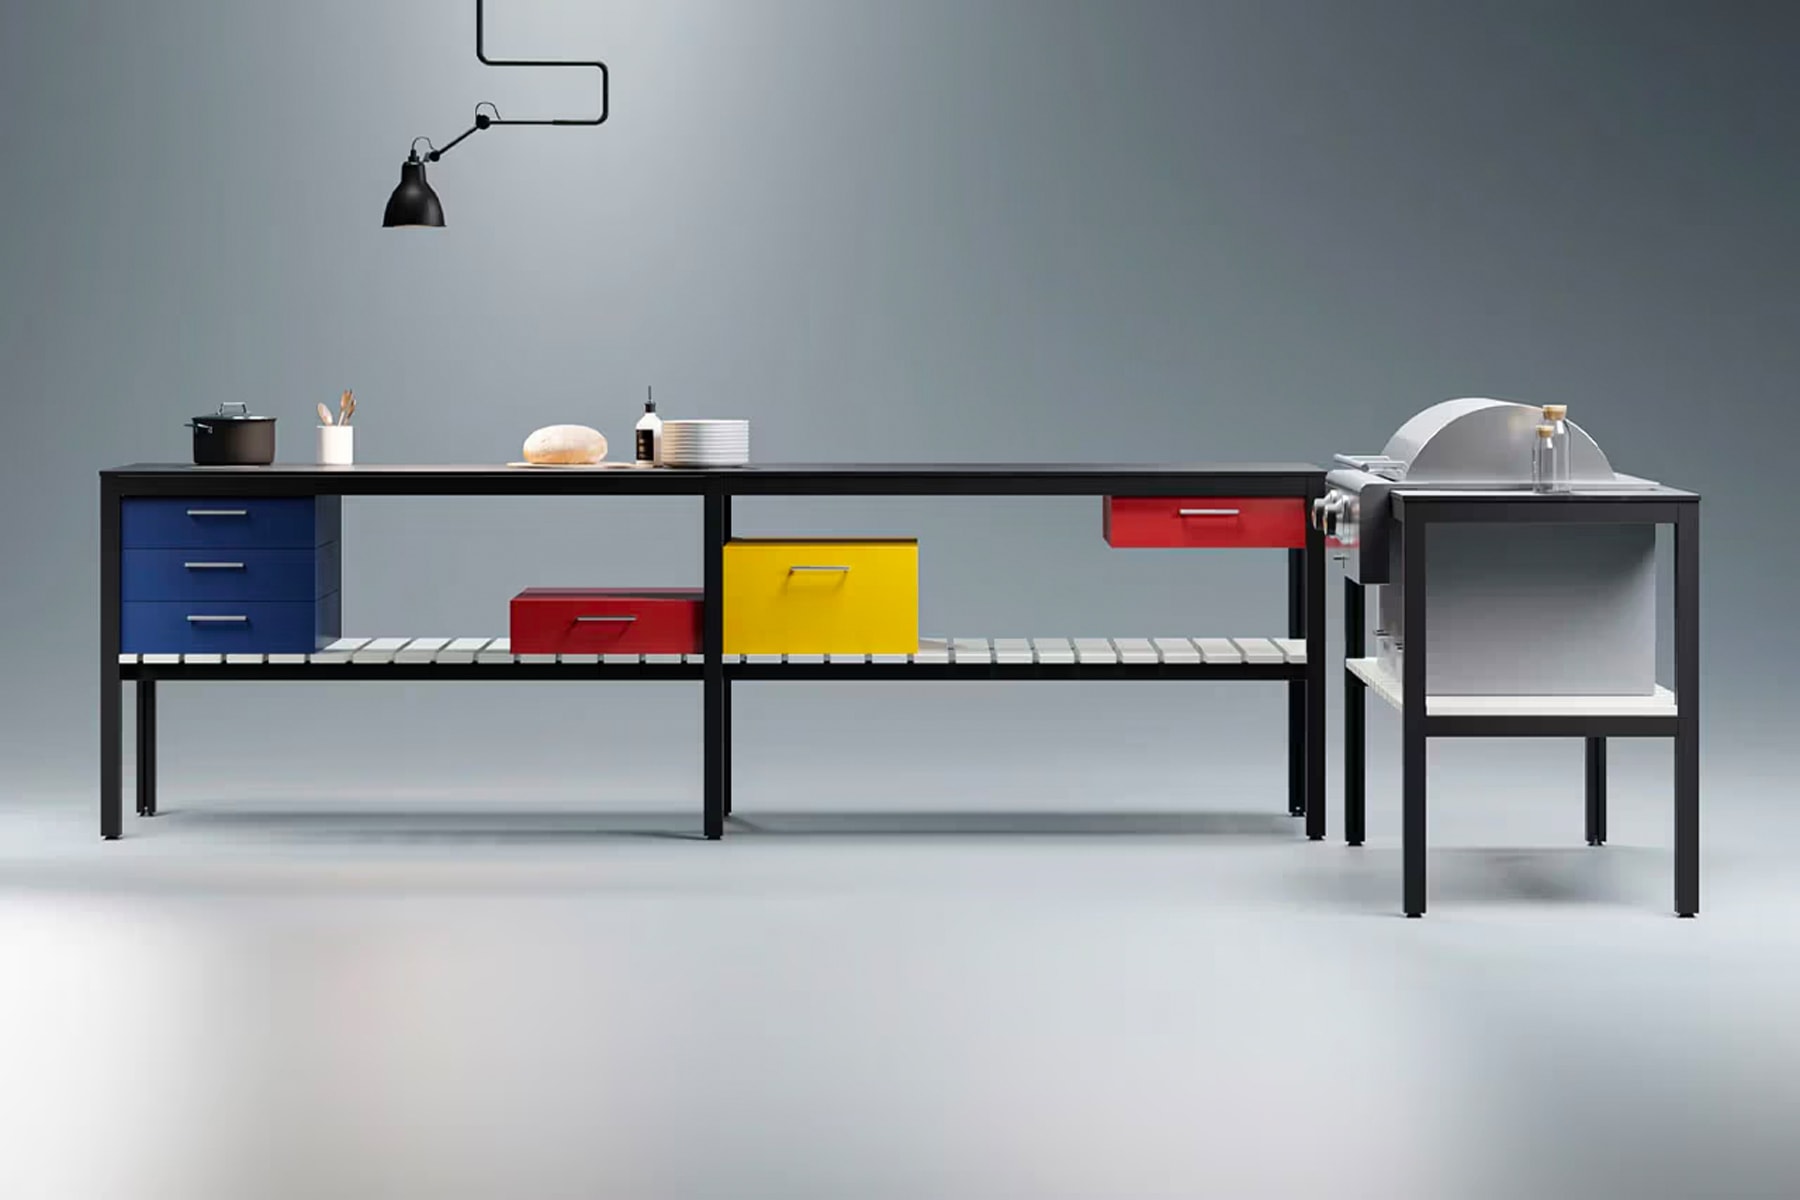 建築師兼設計師 Daniel Germani 設計之 Piet Mondrian 風格戶外廚房正式登場